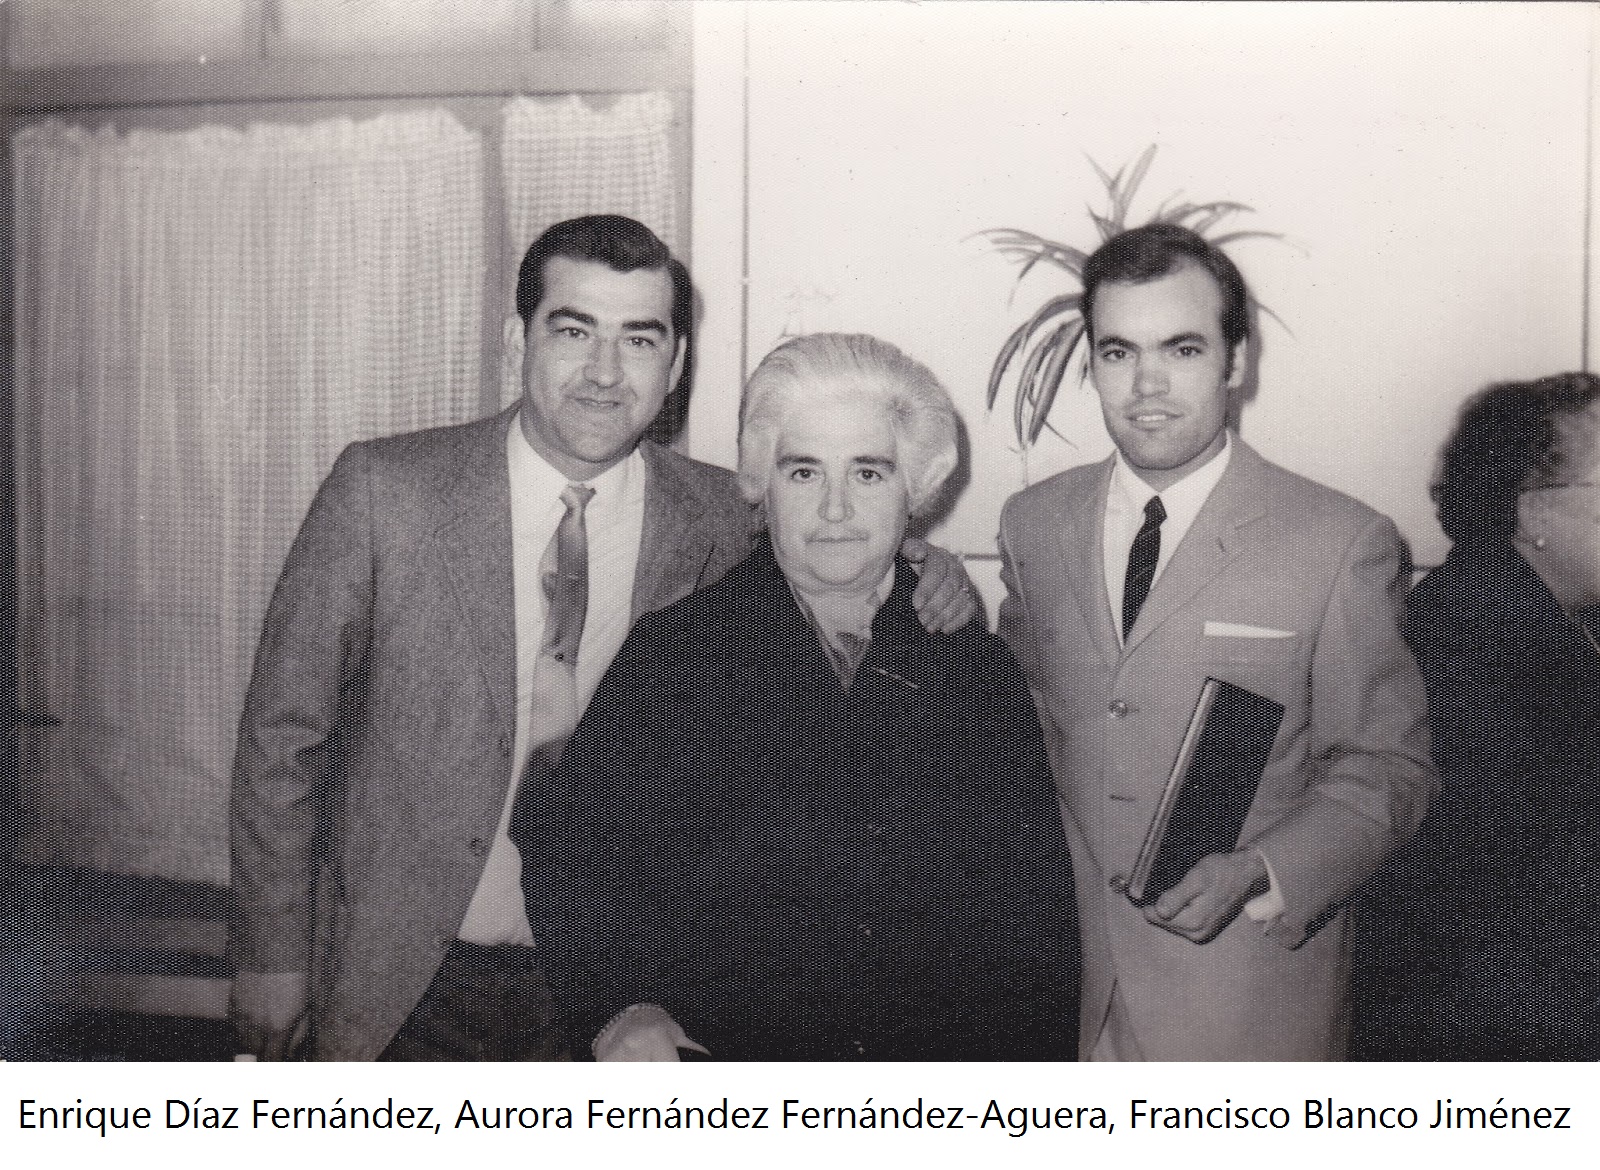 Aurora Fernández Fernández-Aüguera